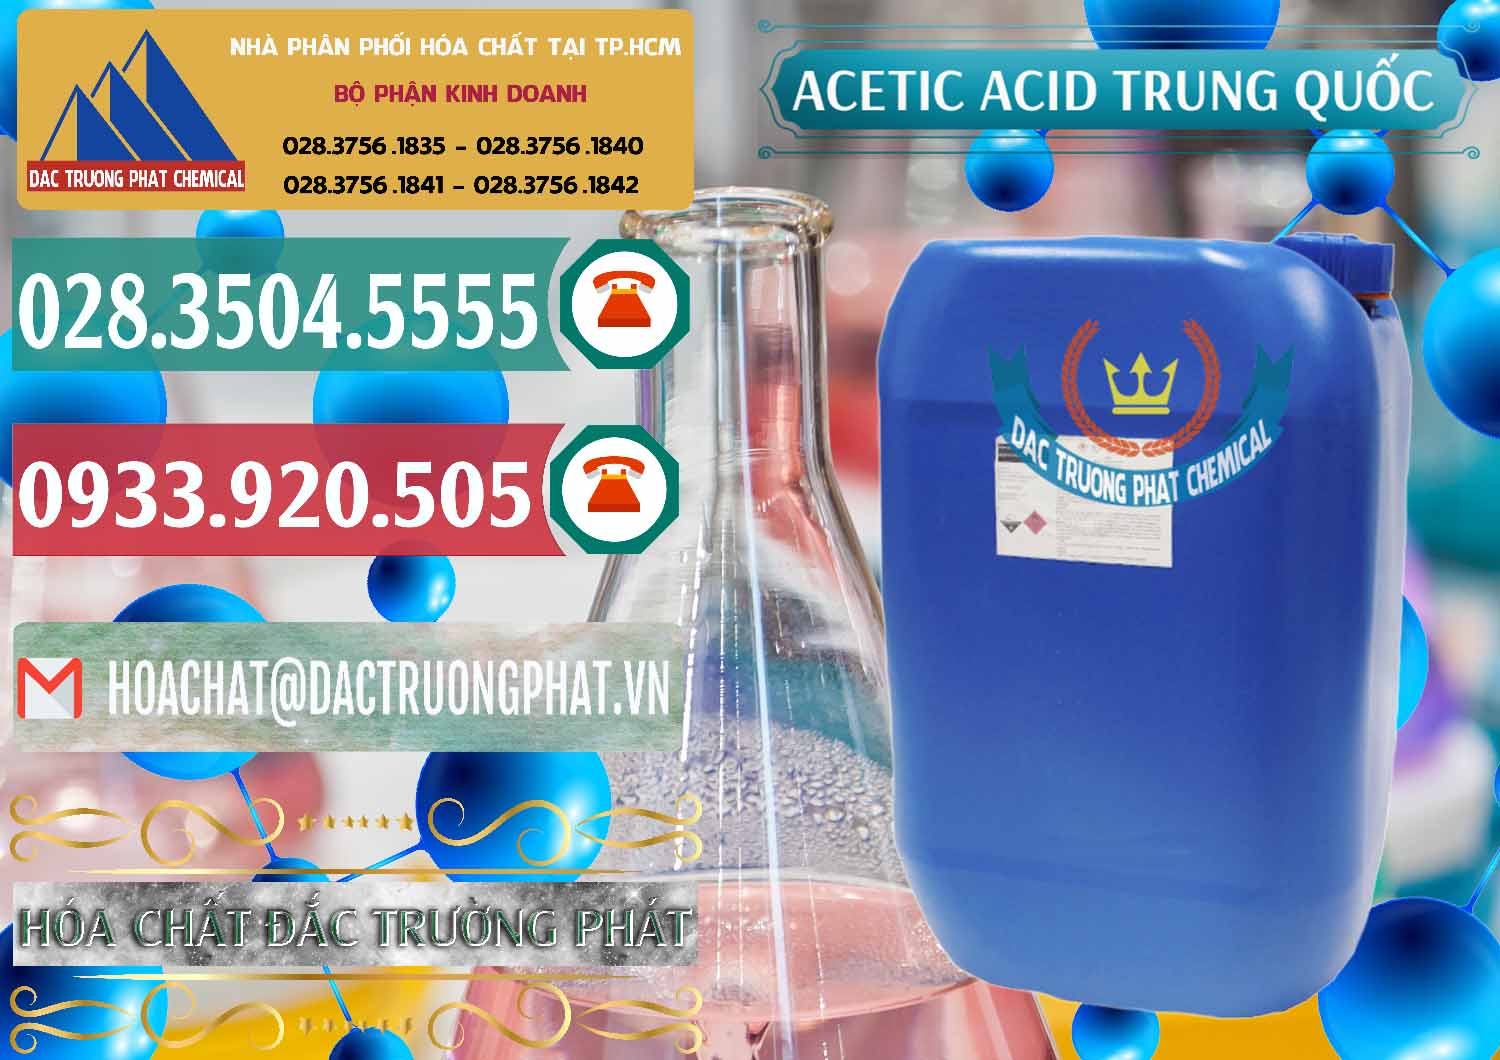 Cty chuyên phân phối _ bán Acetic Acid – Axit Acetic Trung Quốc China - 0358 - Nơi phân phối _ cung cấp hóa chất tại TP.HCM - muabanhoachat.vn